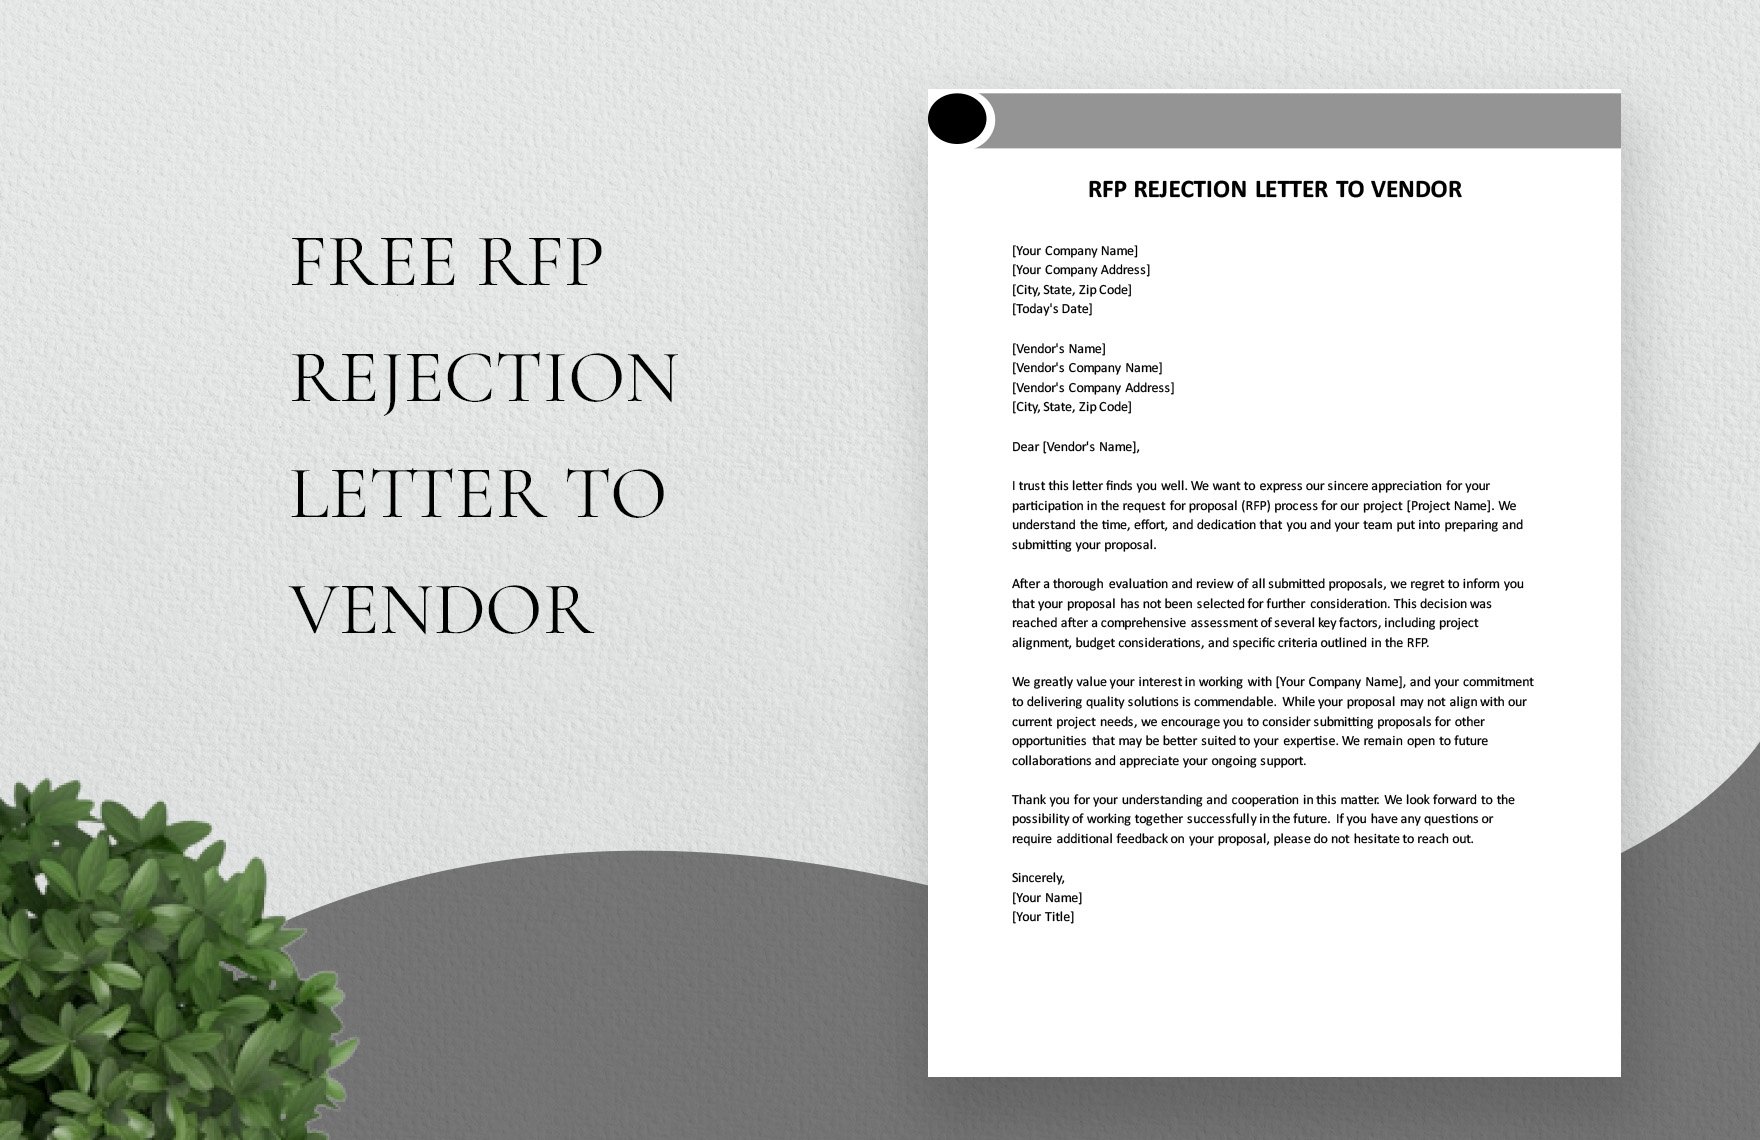 RFP Rejection Letter To Vendor